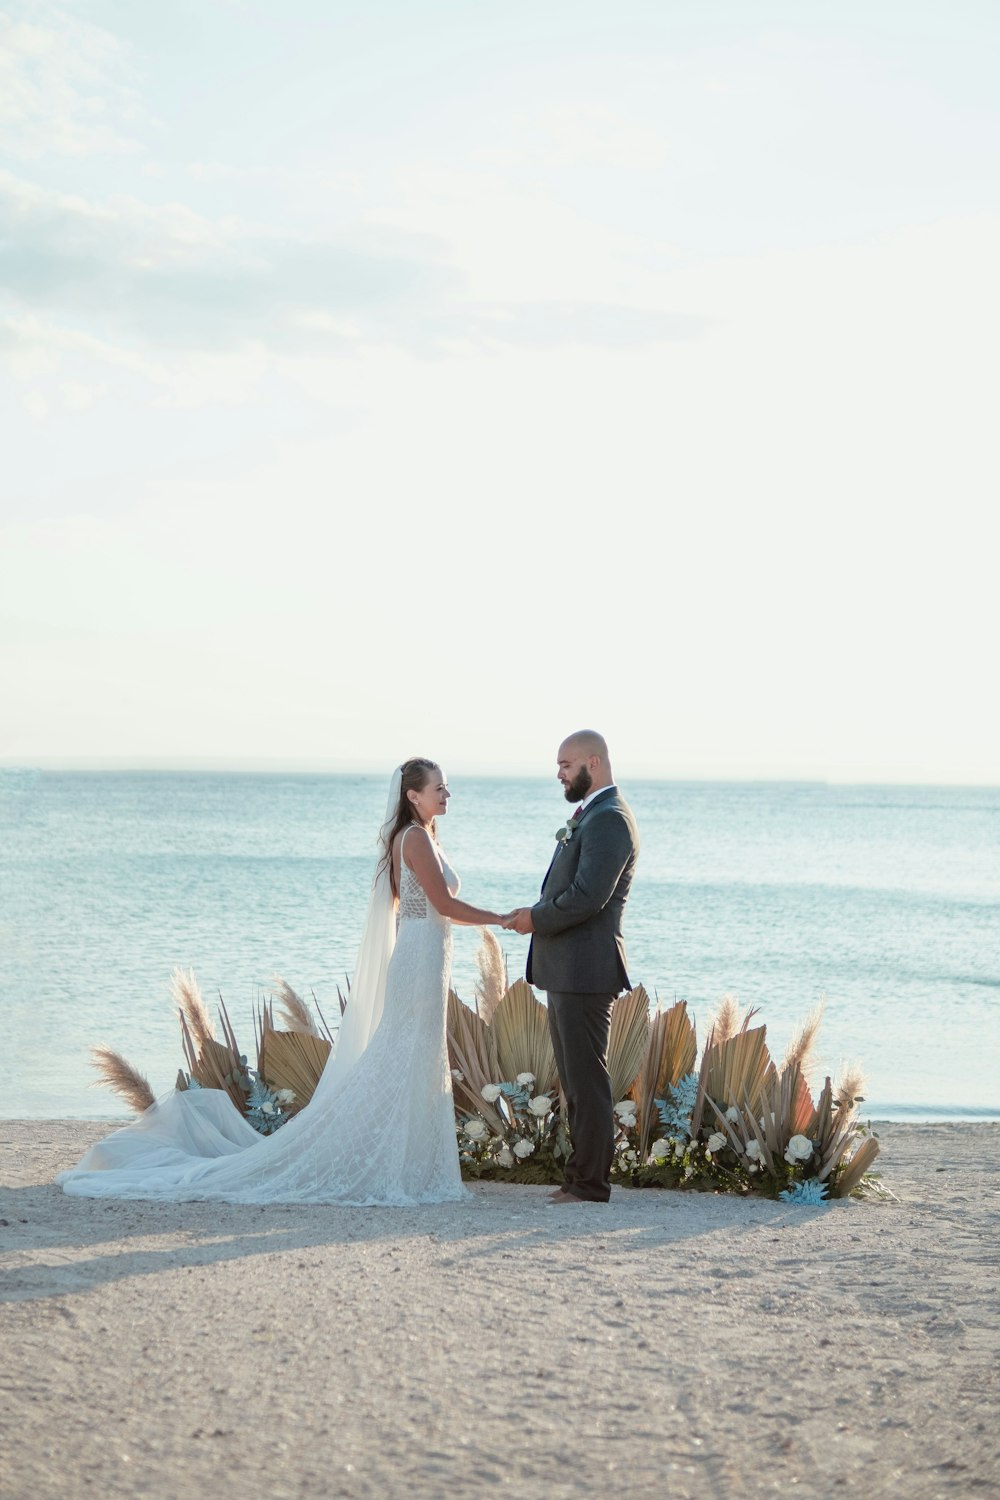 Una sposa e uno sposo in piedi su una spiaggia tenendosi per mano